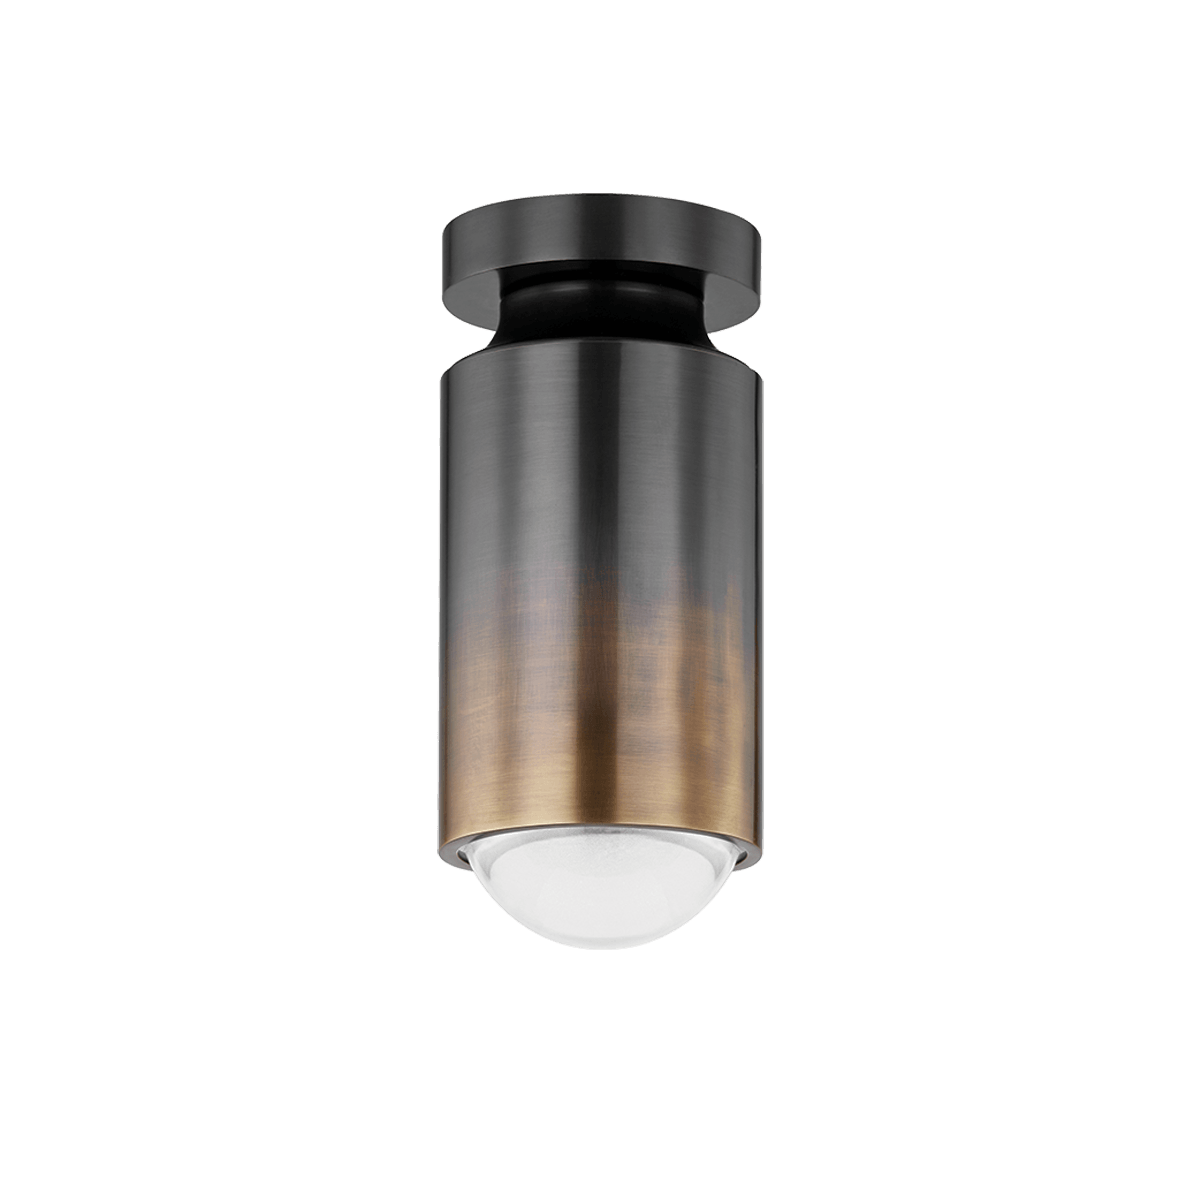 Hudson Valley Lighting - Whately Flush Mount - 3405-GB | Montreal Lighting & Hardware